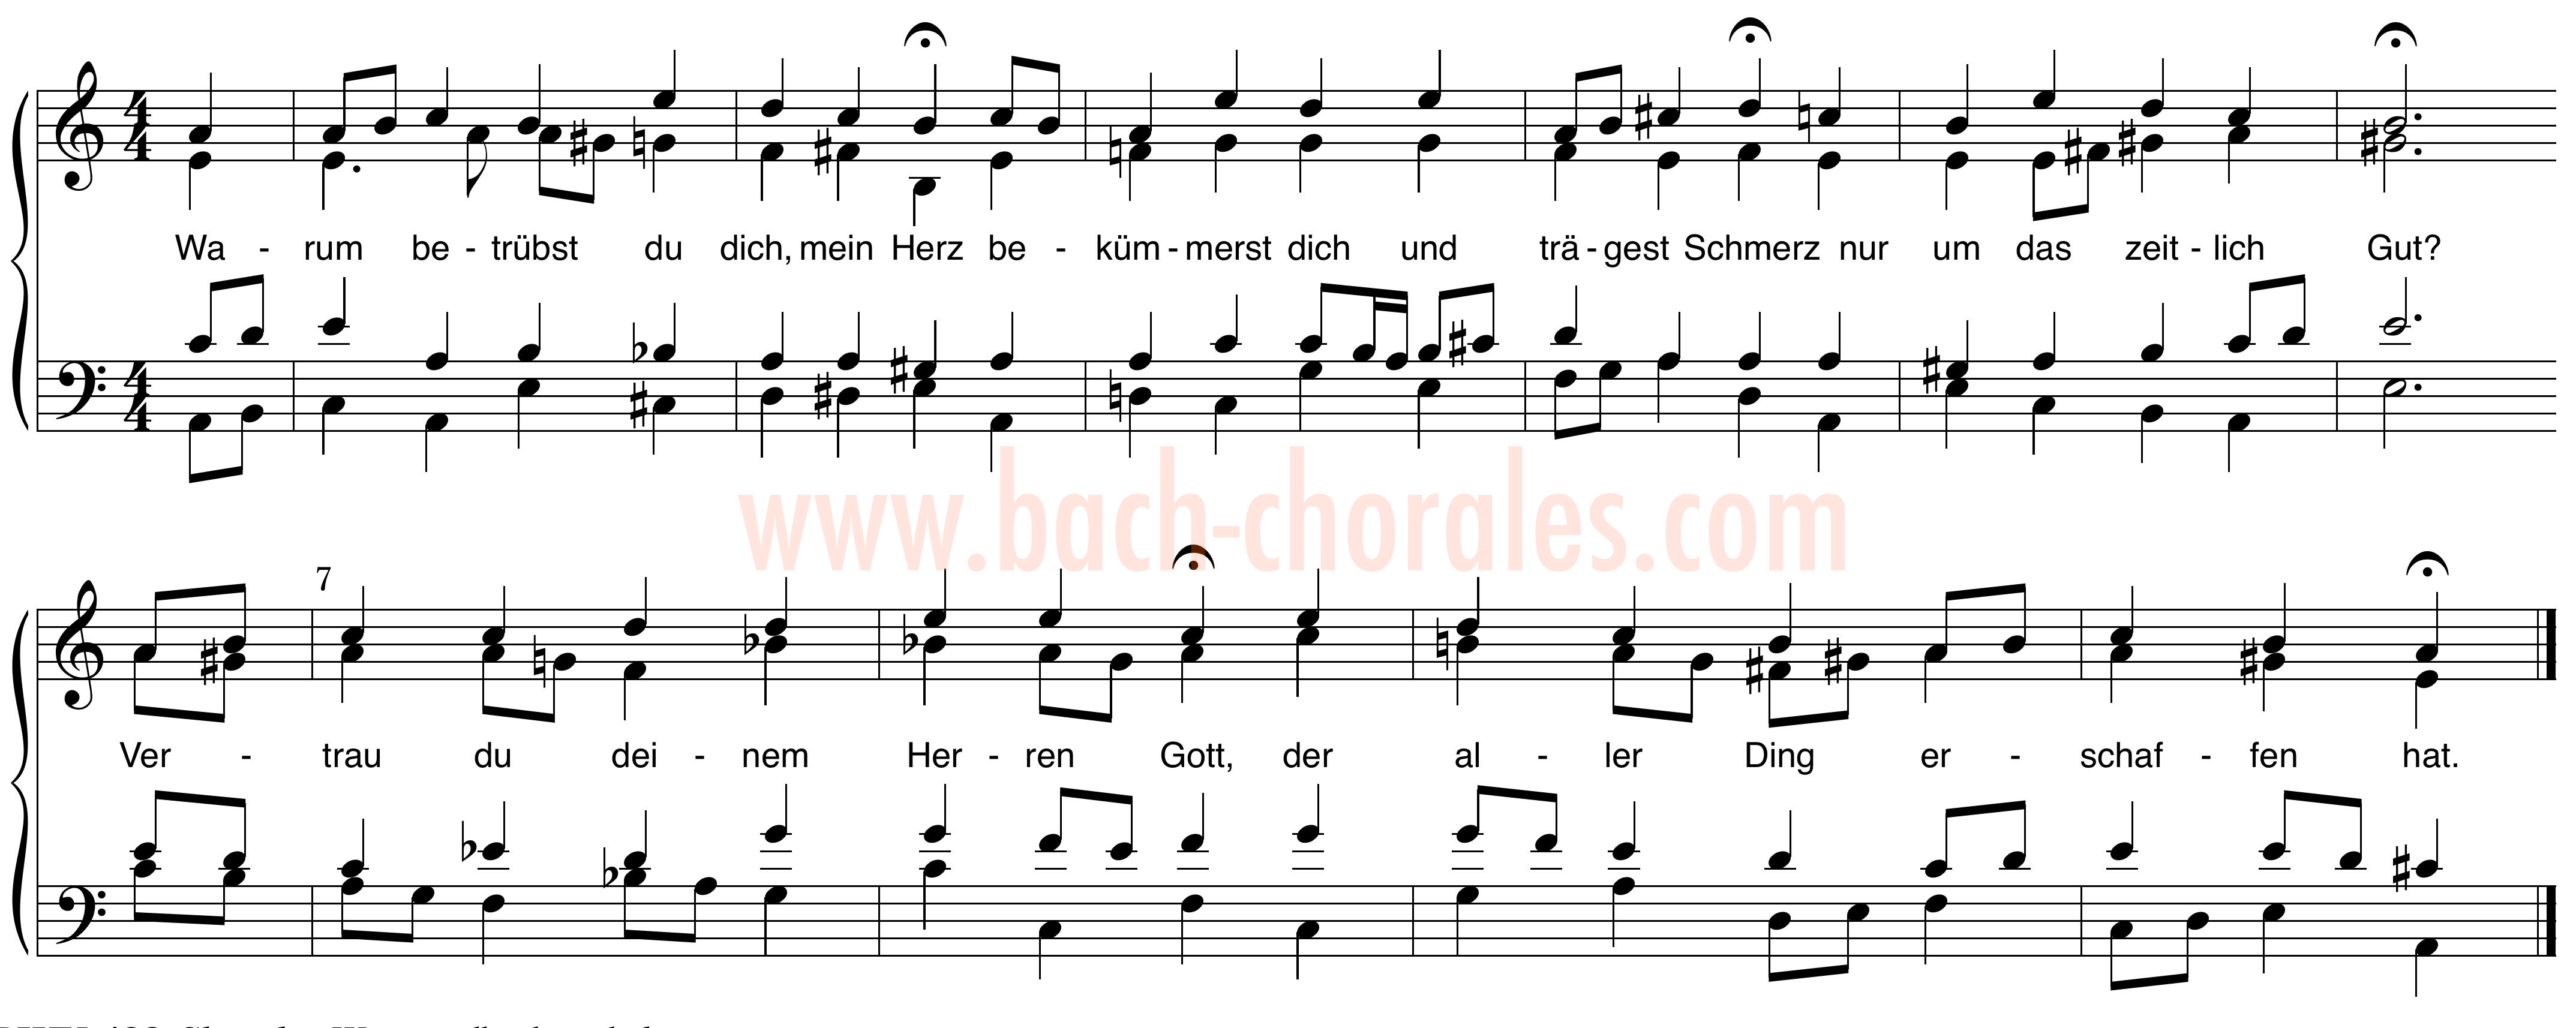 notenbeeld BWV 421 op https://www.bach-chorales.com/